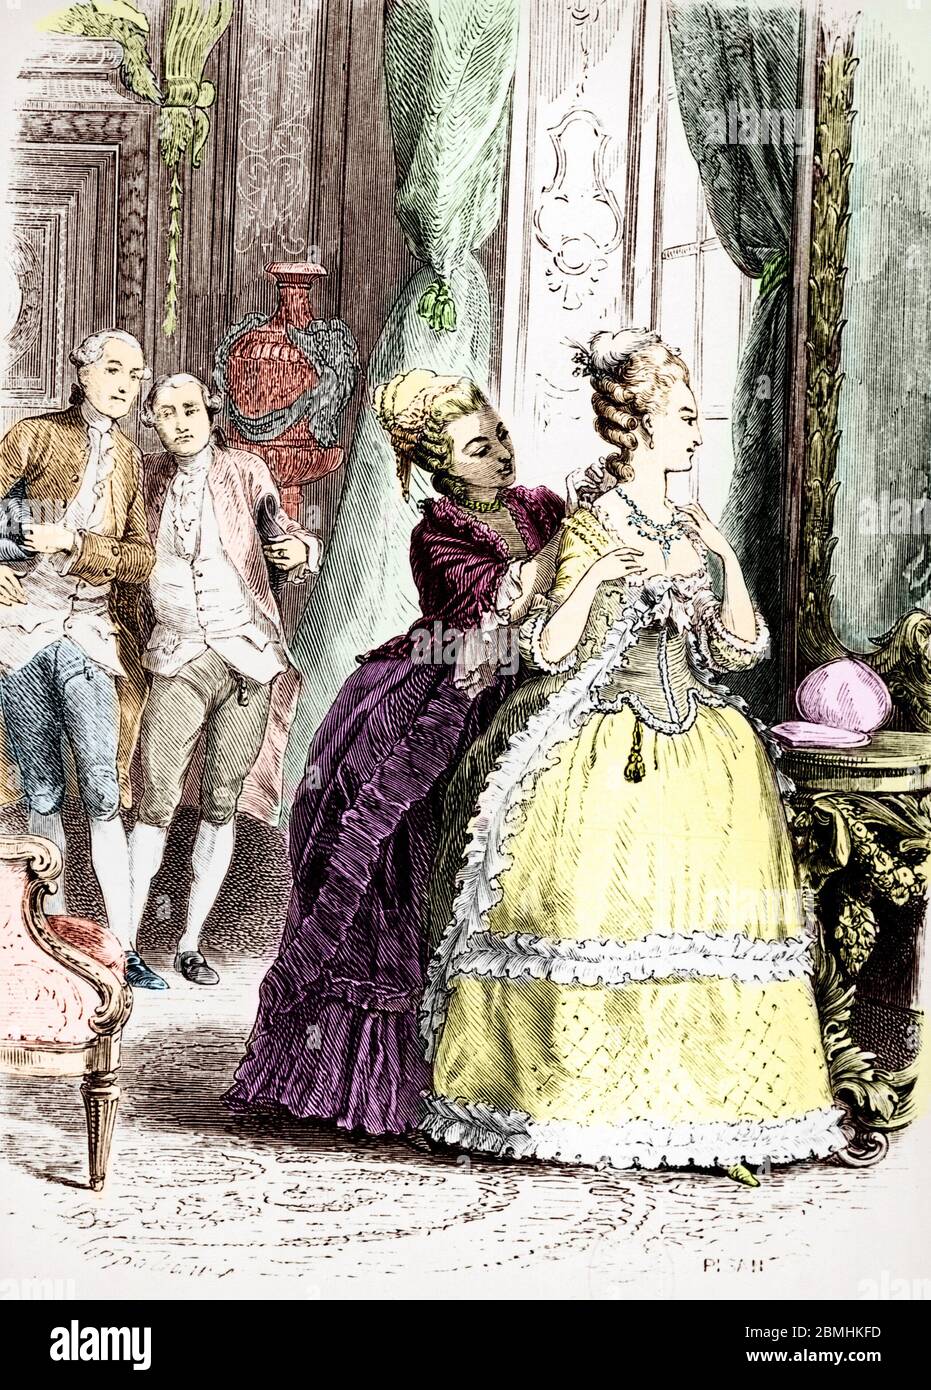 Affaire du collier de la reine : "La reine Marie Antoinette endosse le collier" Illustration tiree de "Le collier de la Reine" d' Alexandre Dumas pere Stock Photo